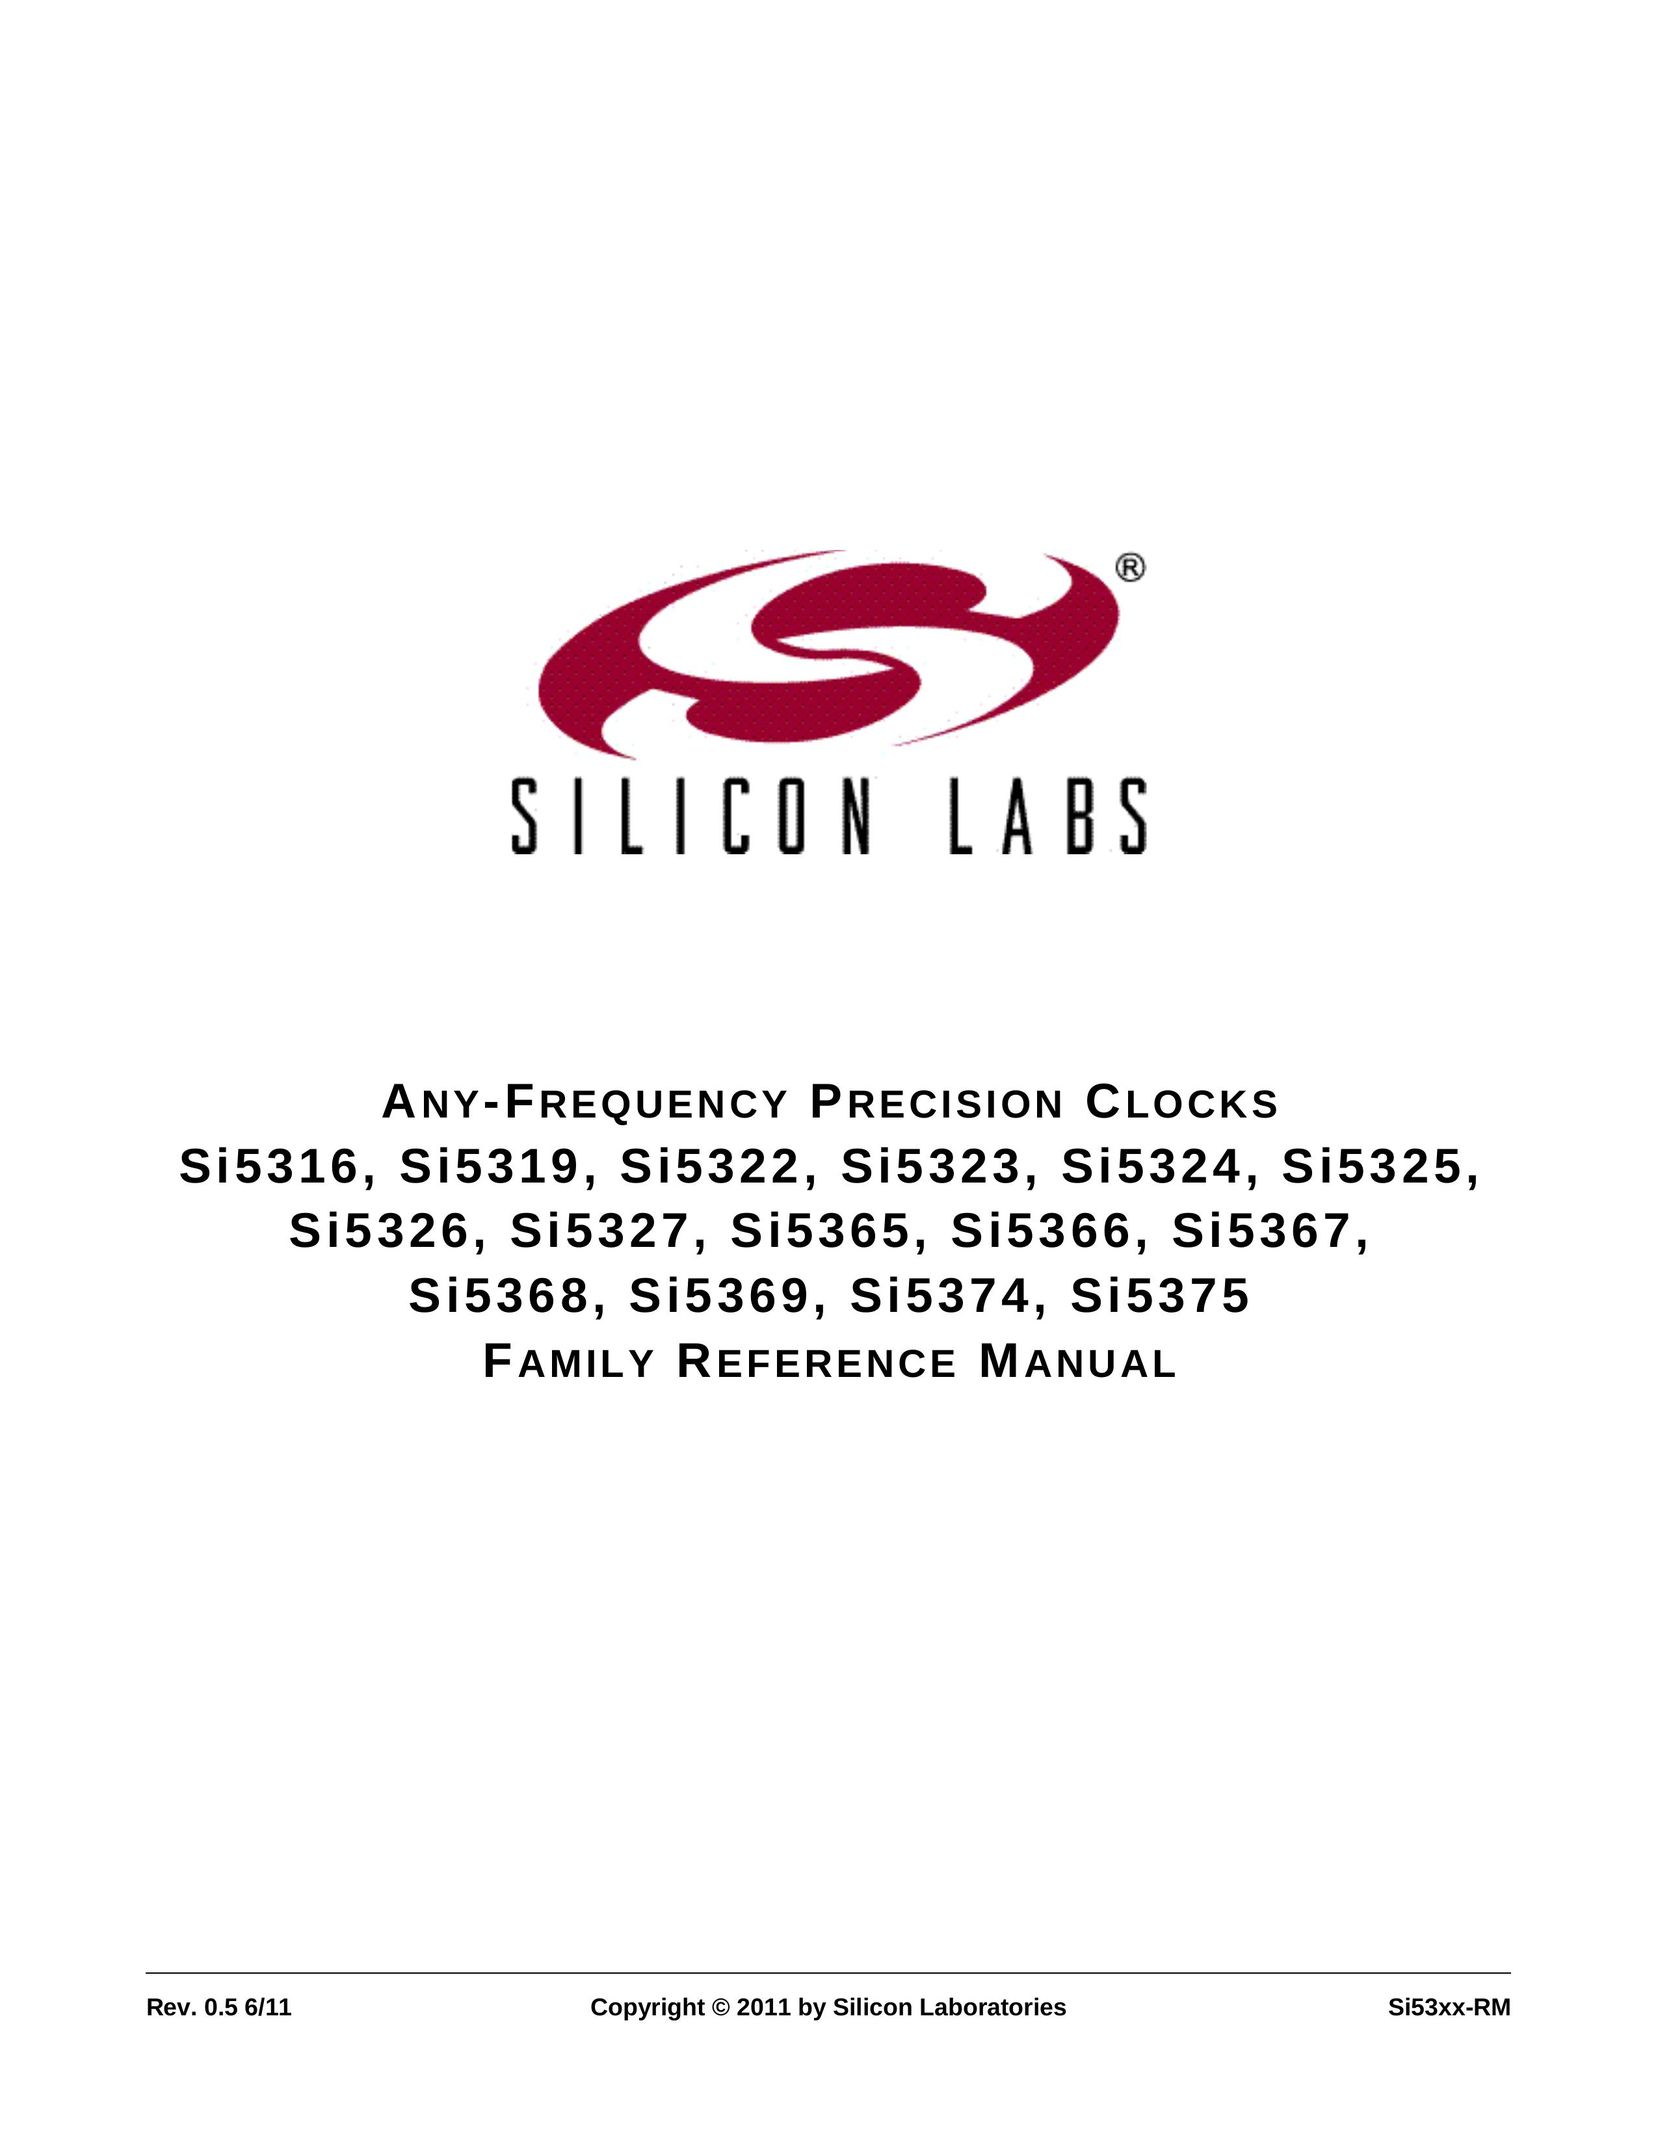 Silicon Laboratories SI5374 Clock User Manual